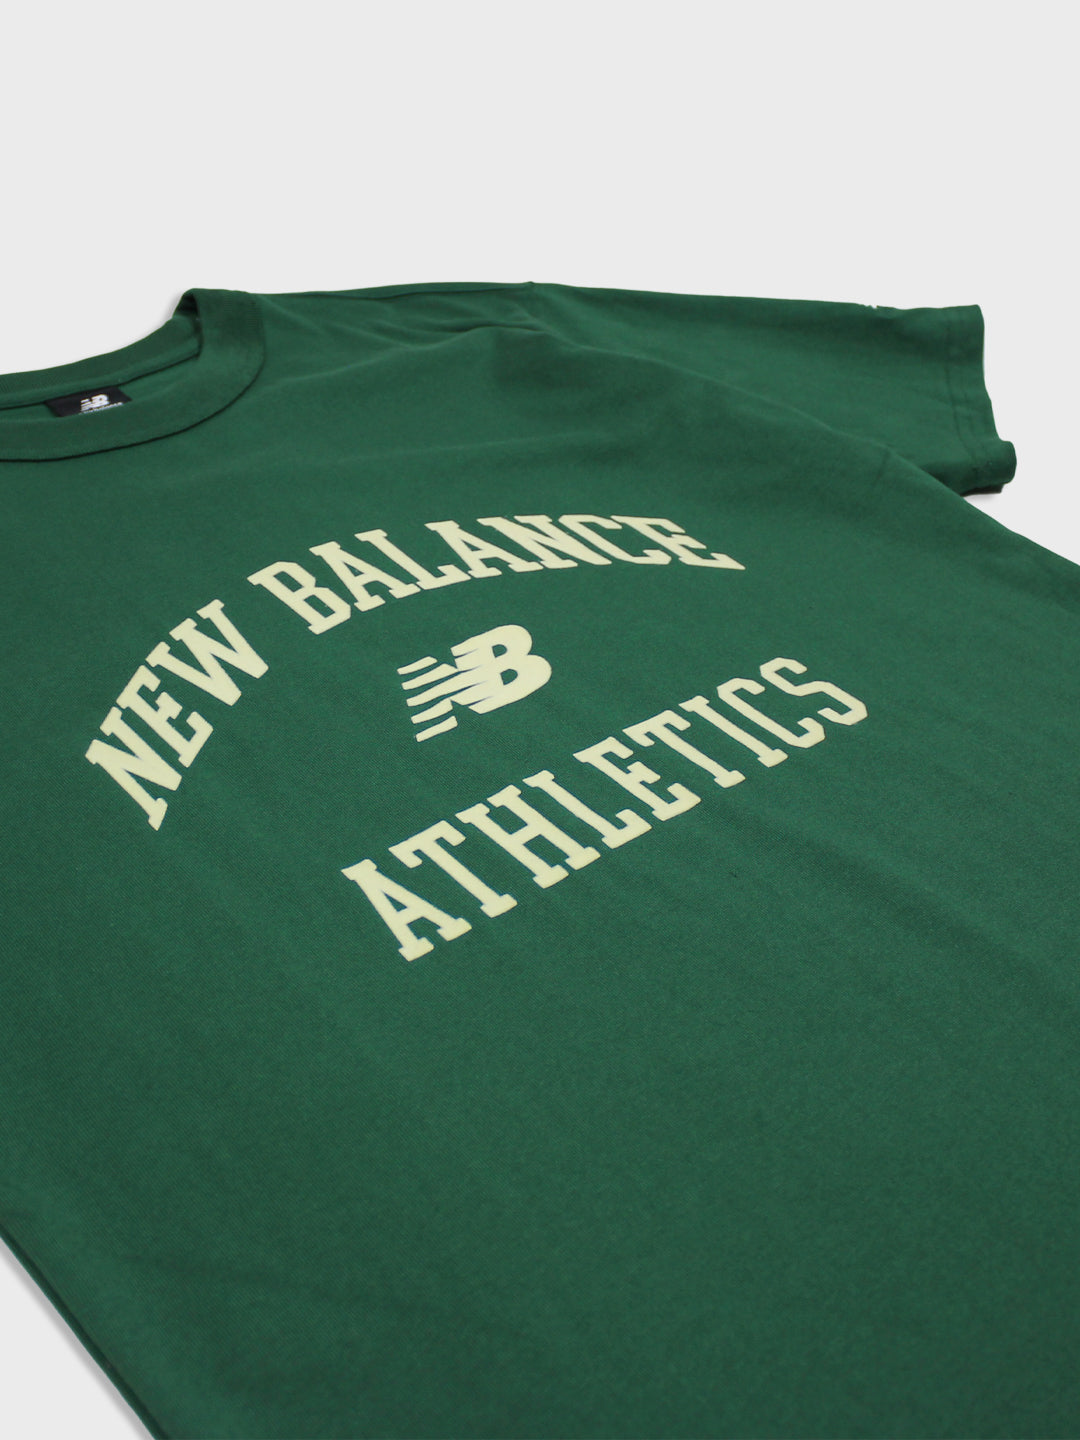 new balance t-shirt groen